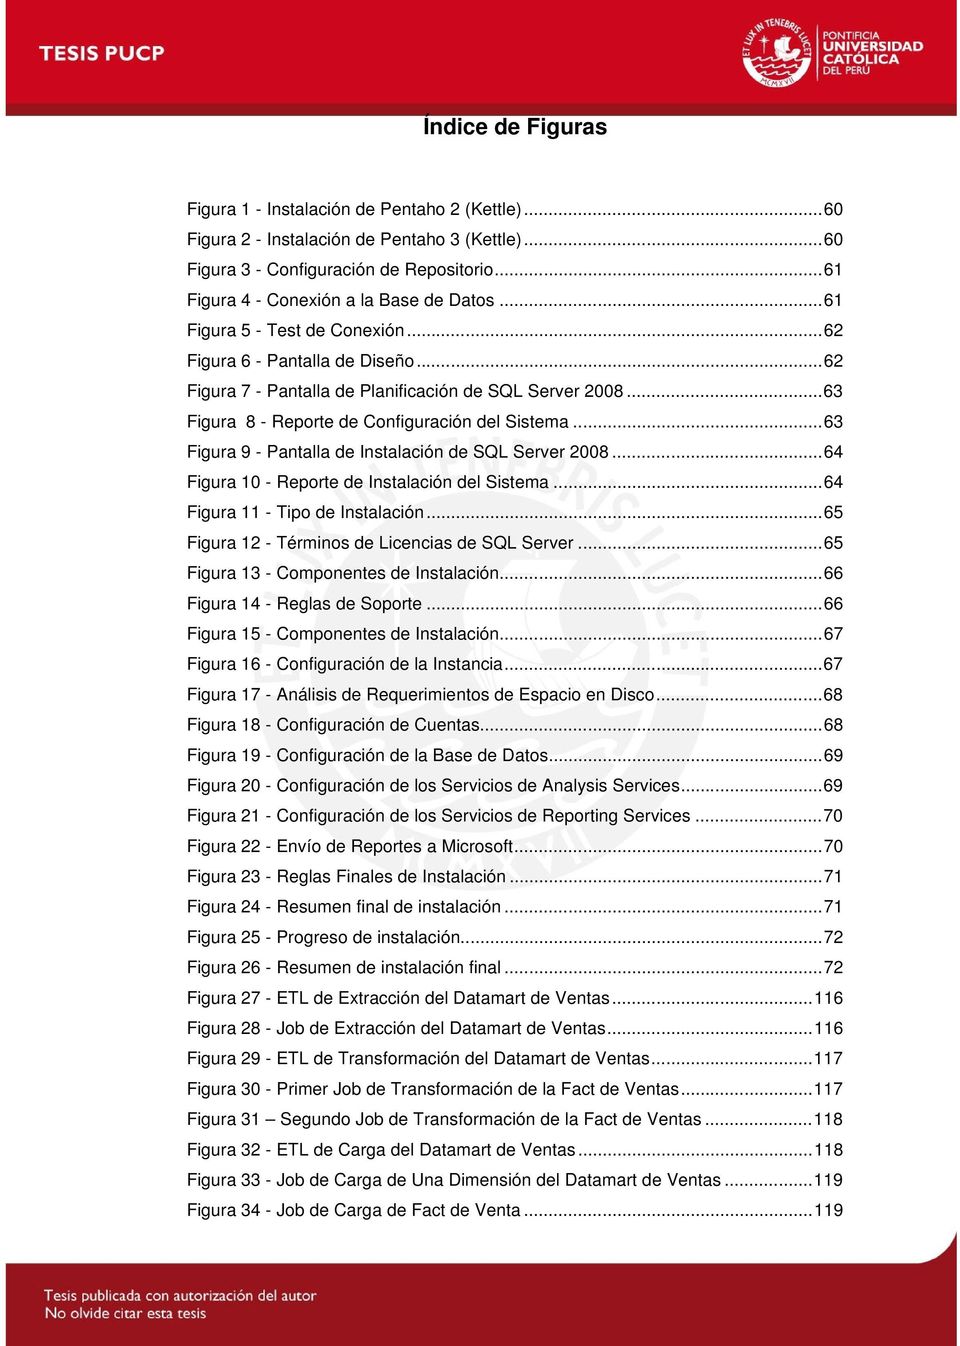 .. 63 Figura 8 - Reporte de Configuración del Sistema... 63 Figura 9 - Pantalla de Instalación de SQL Server 2008... 64 Figura 10 - Reporte de Instalación del Sistema.